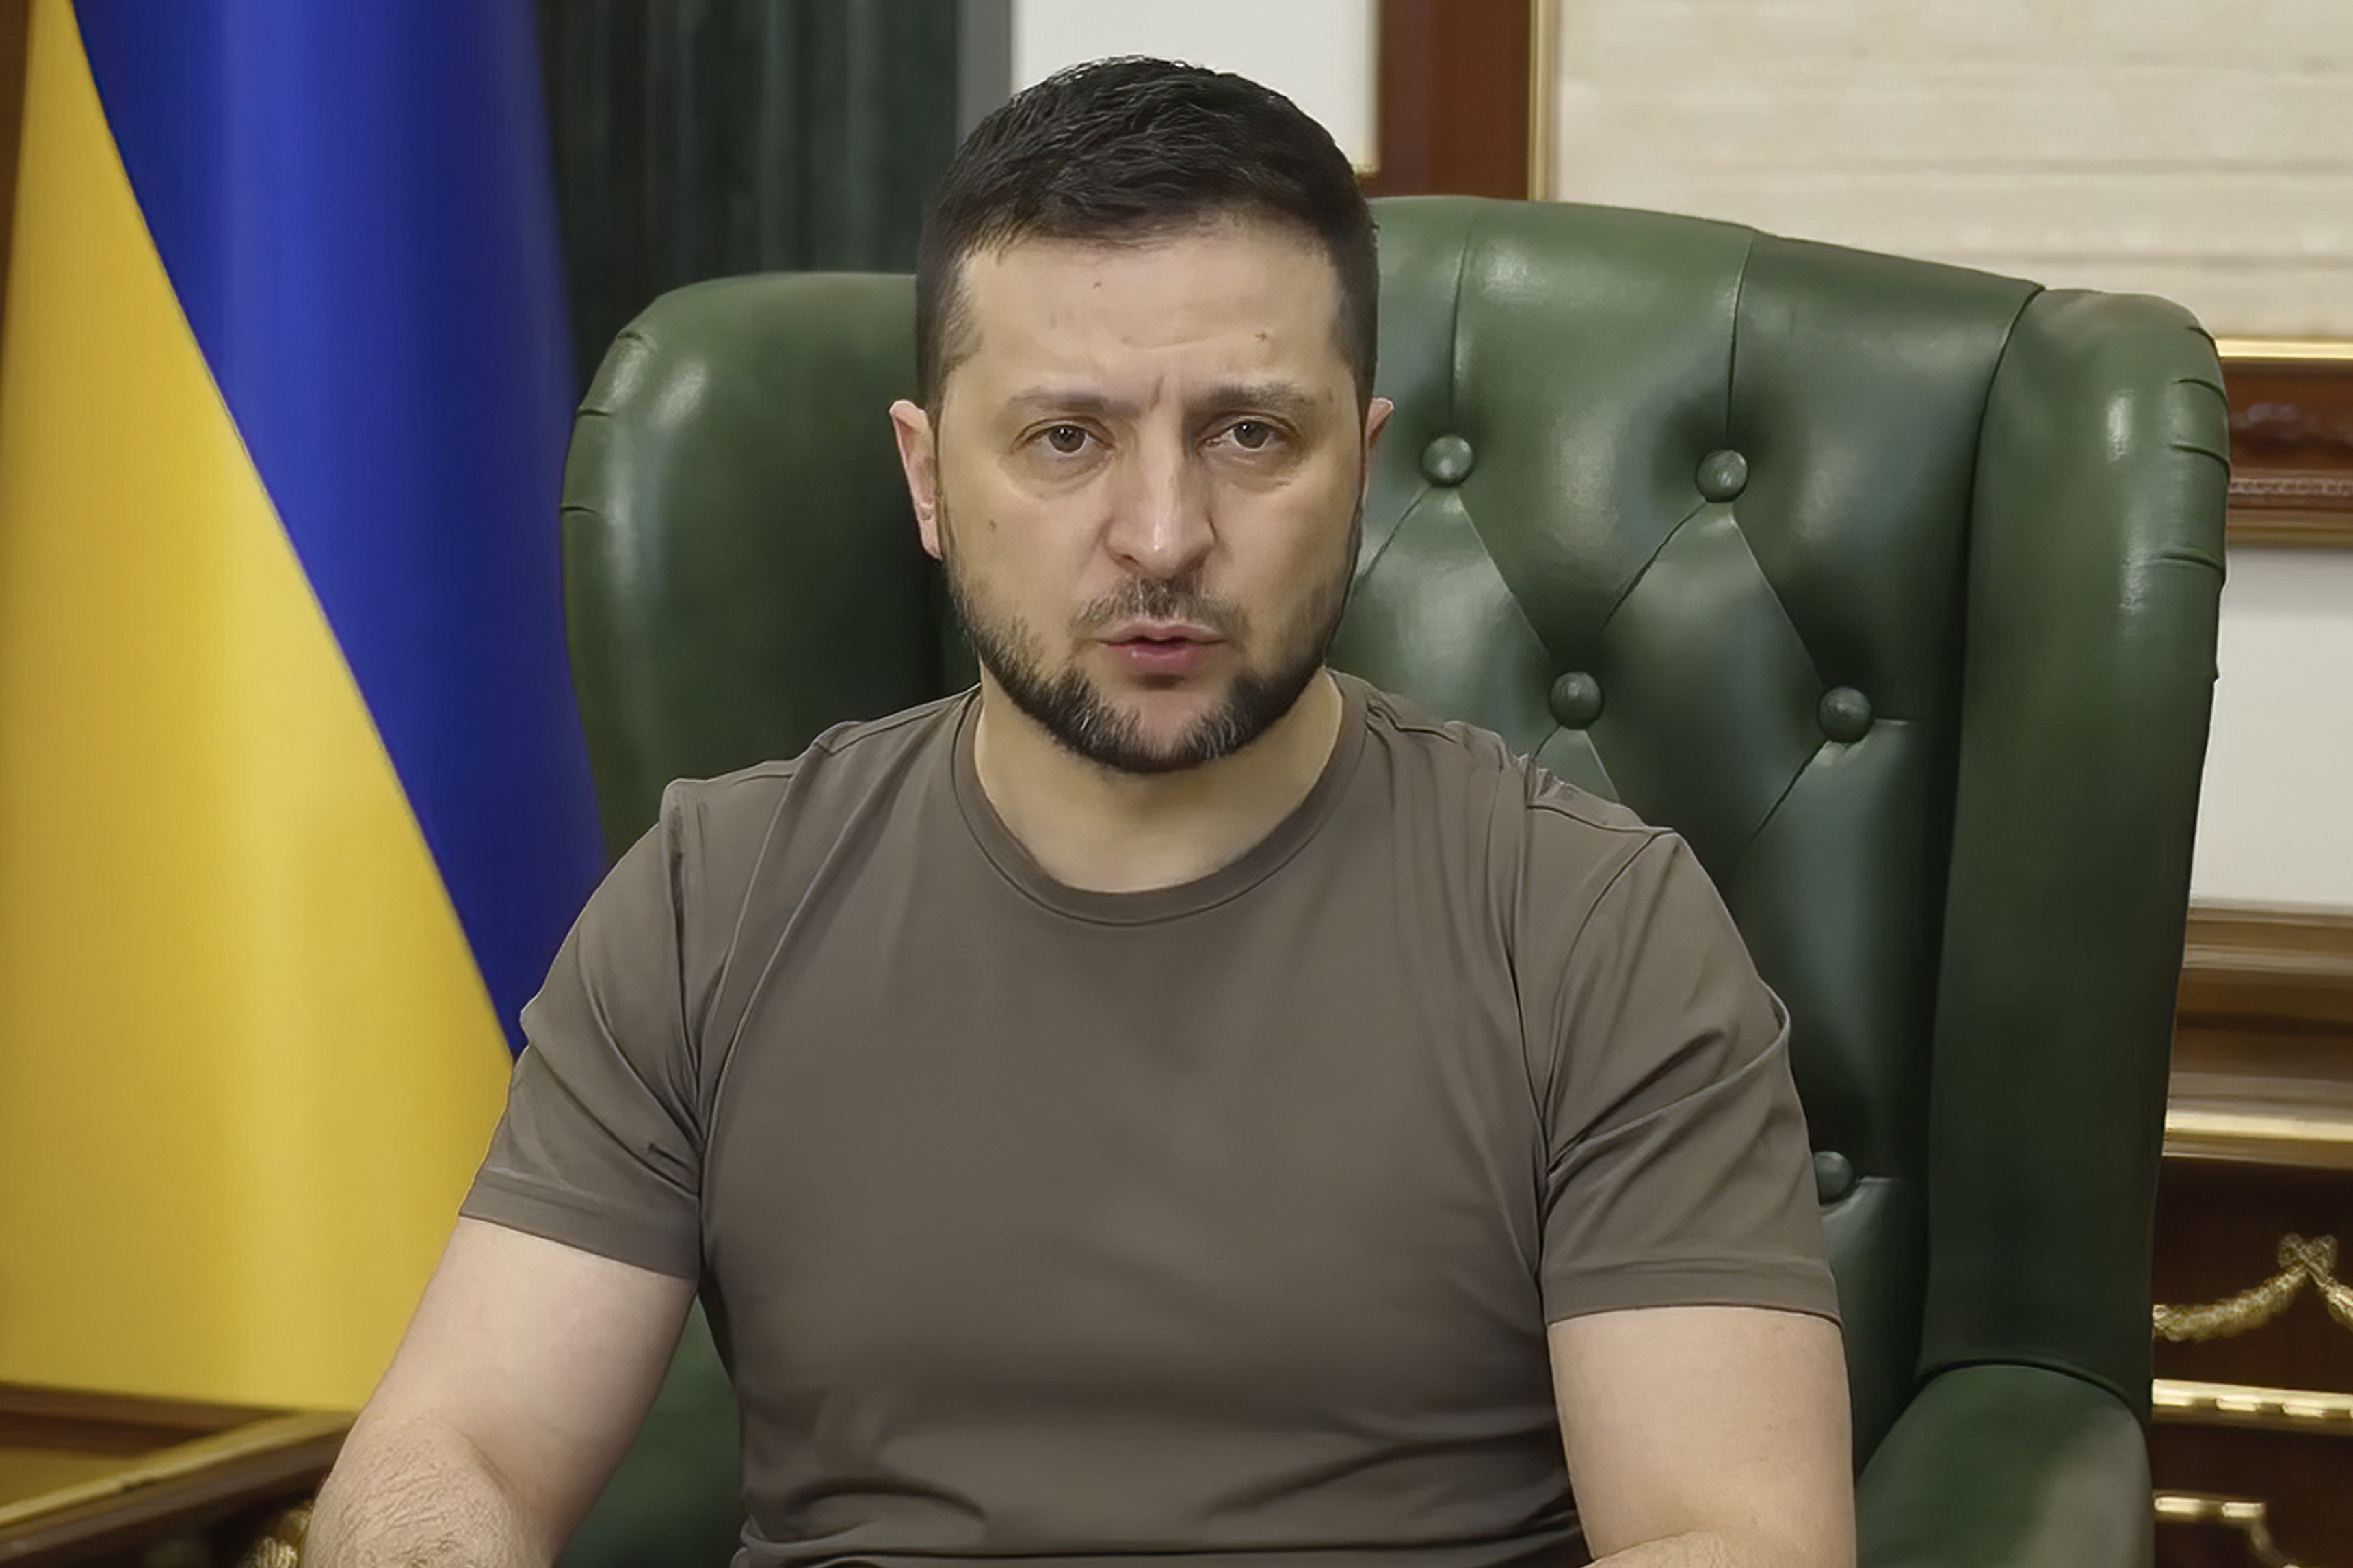 Украинските сили понасят болезнени загуби в боевете срещу руските войски